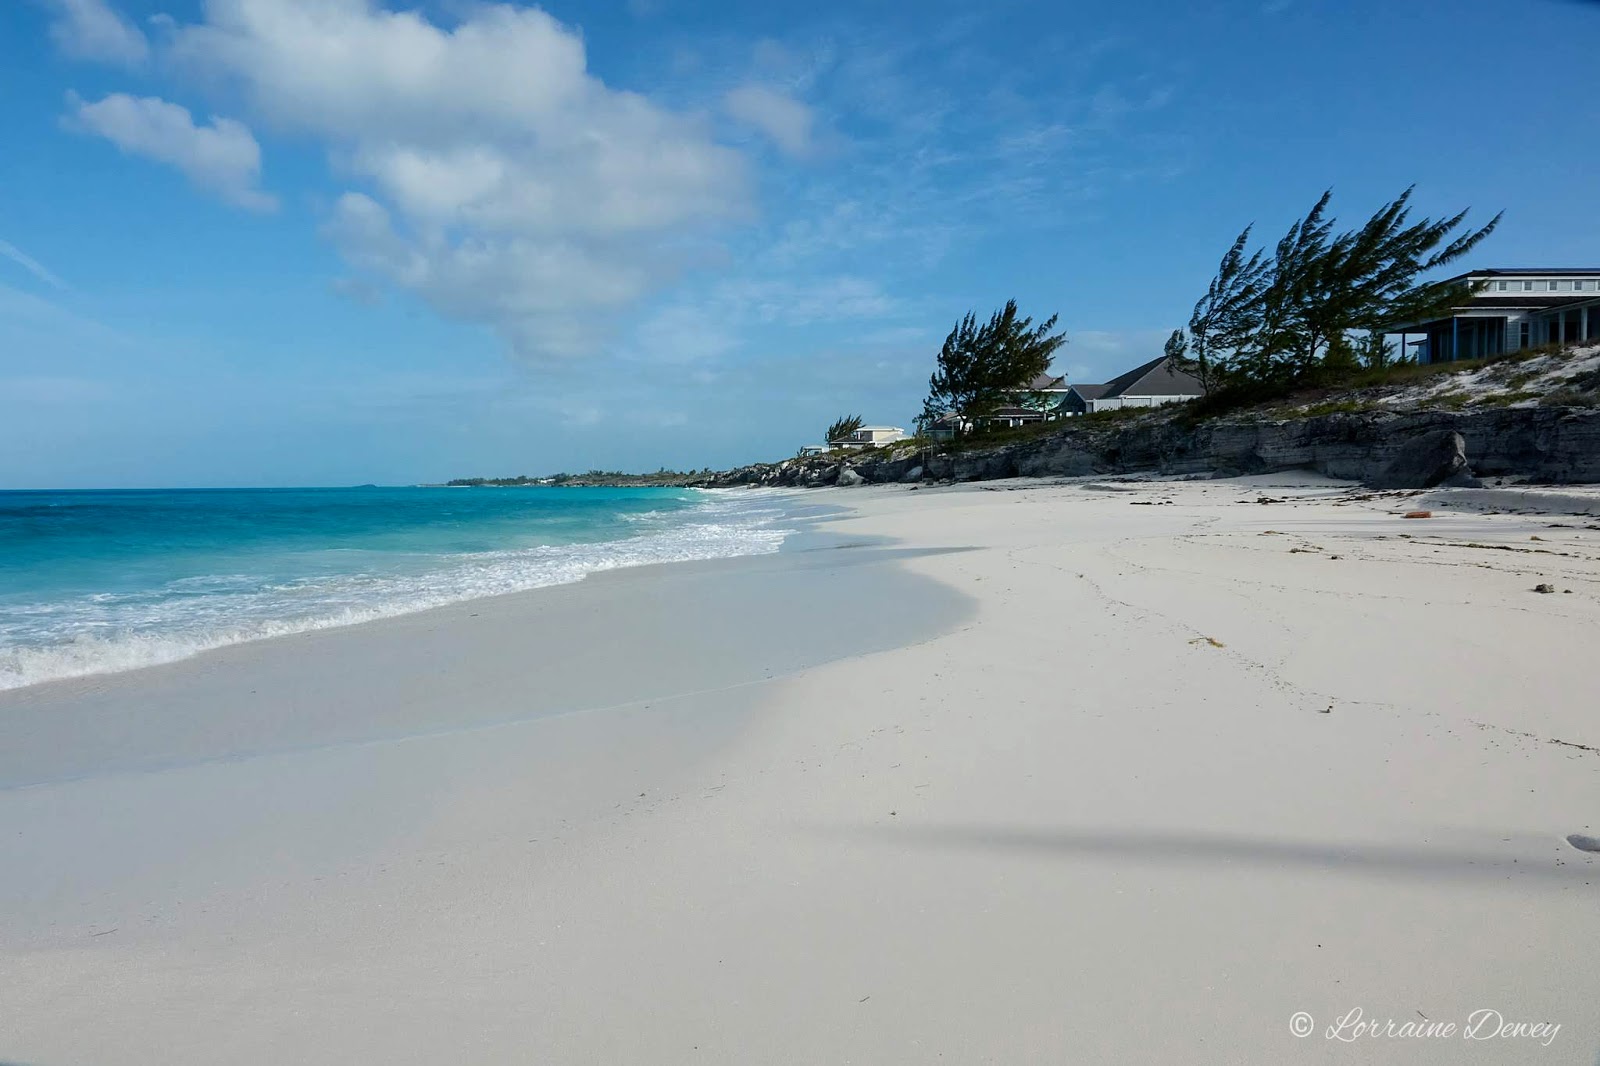 Foto de Prime cut beach com areia fina branca superfície